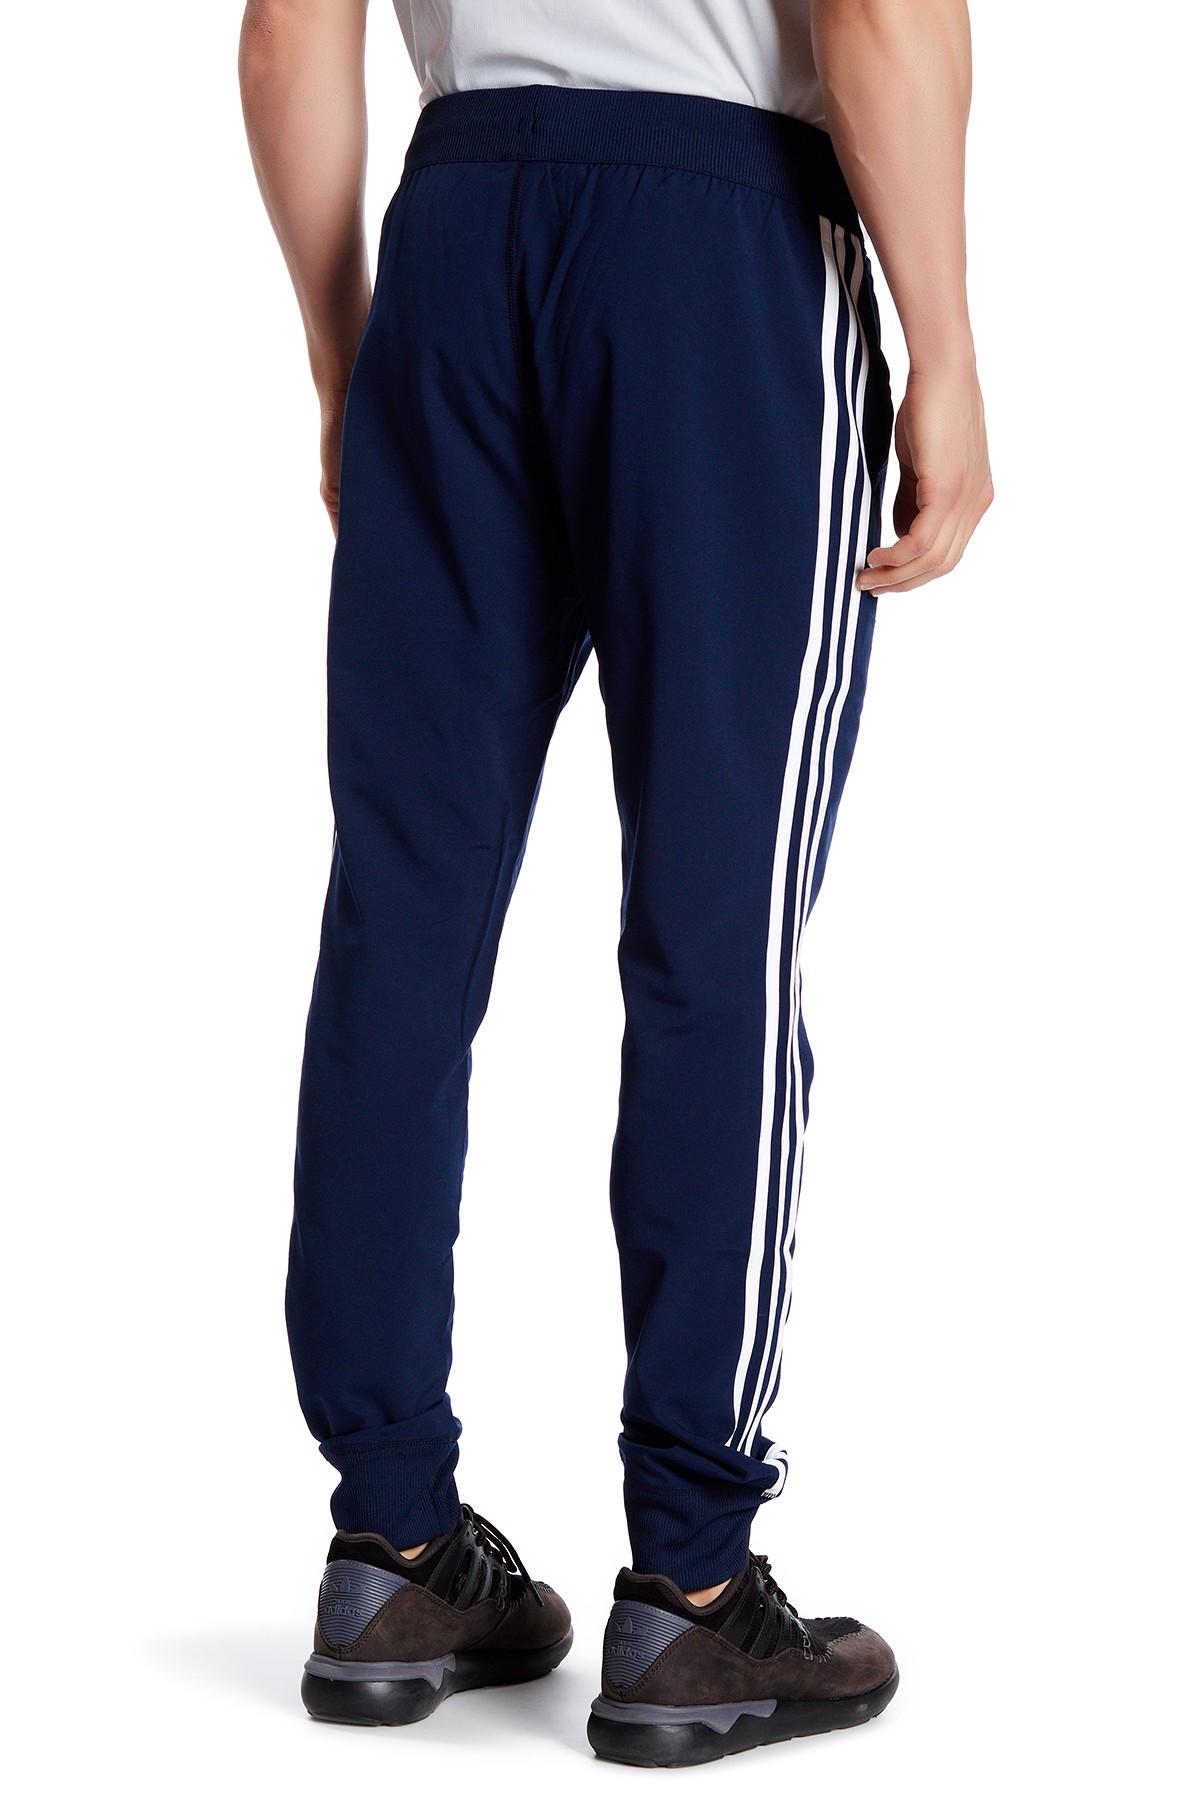 Lyst - adidas Originals 3-stripe Pant in Blue for Men